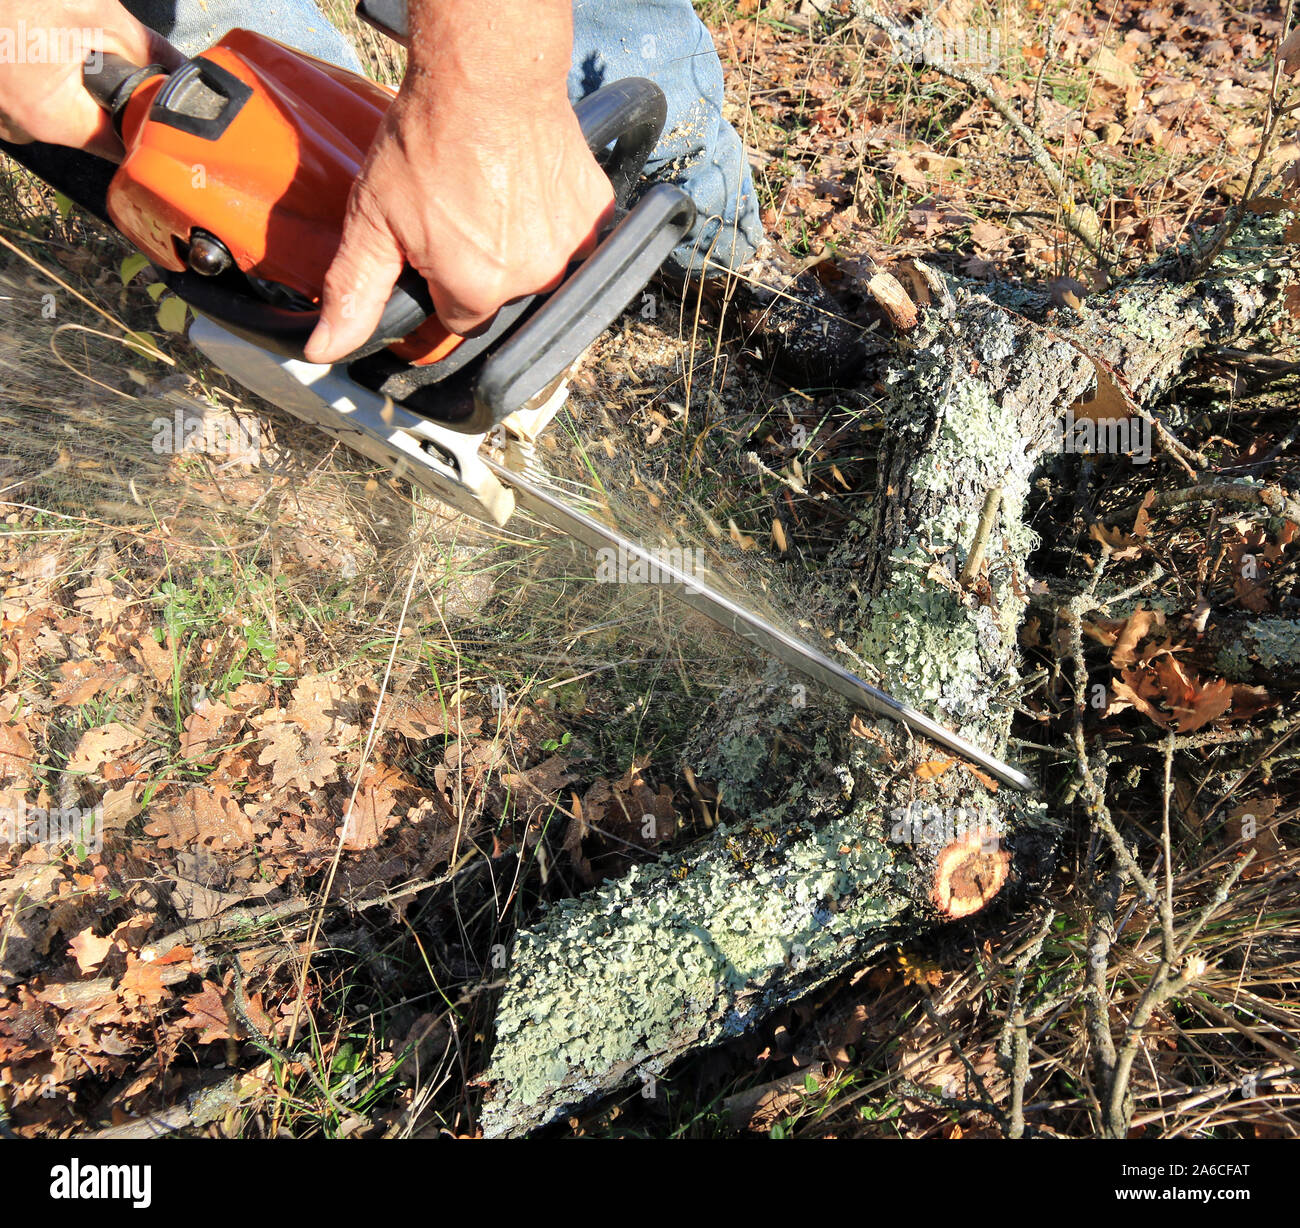 Utilizar una sierra para cortar leña Fotografía de stock - Alamy